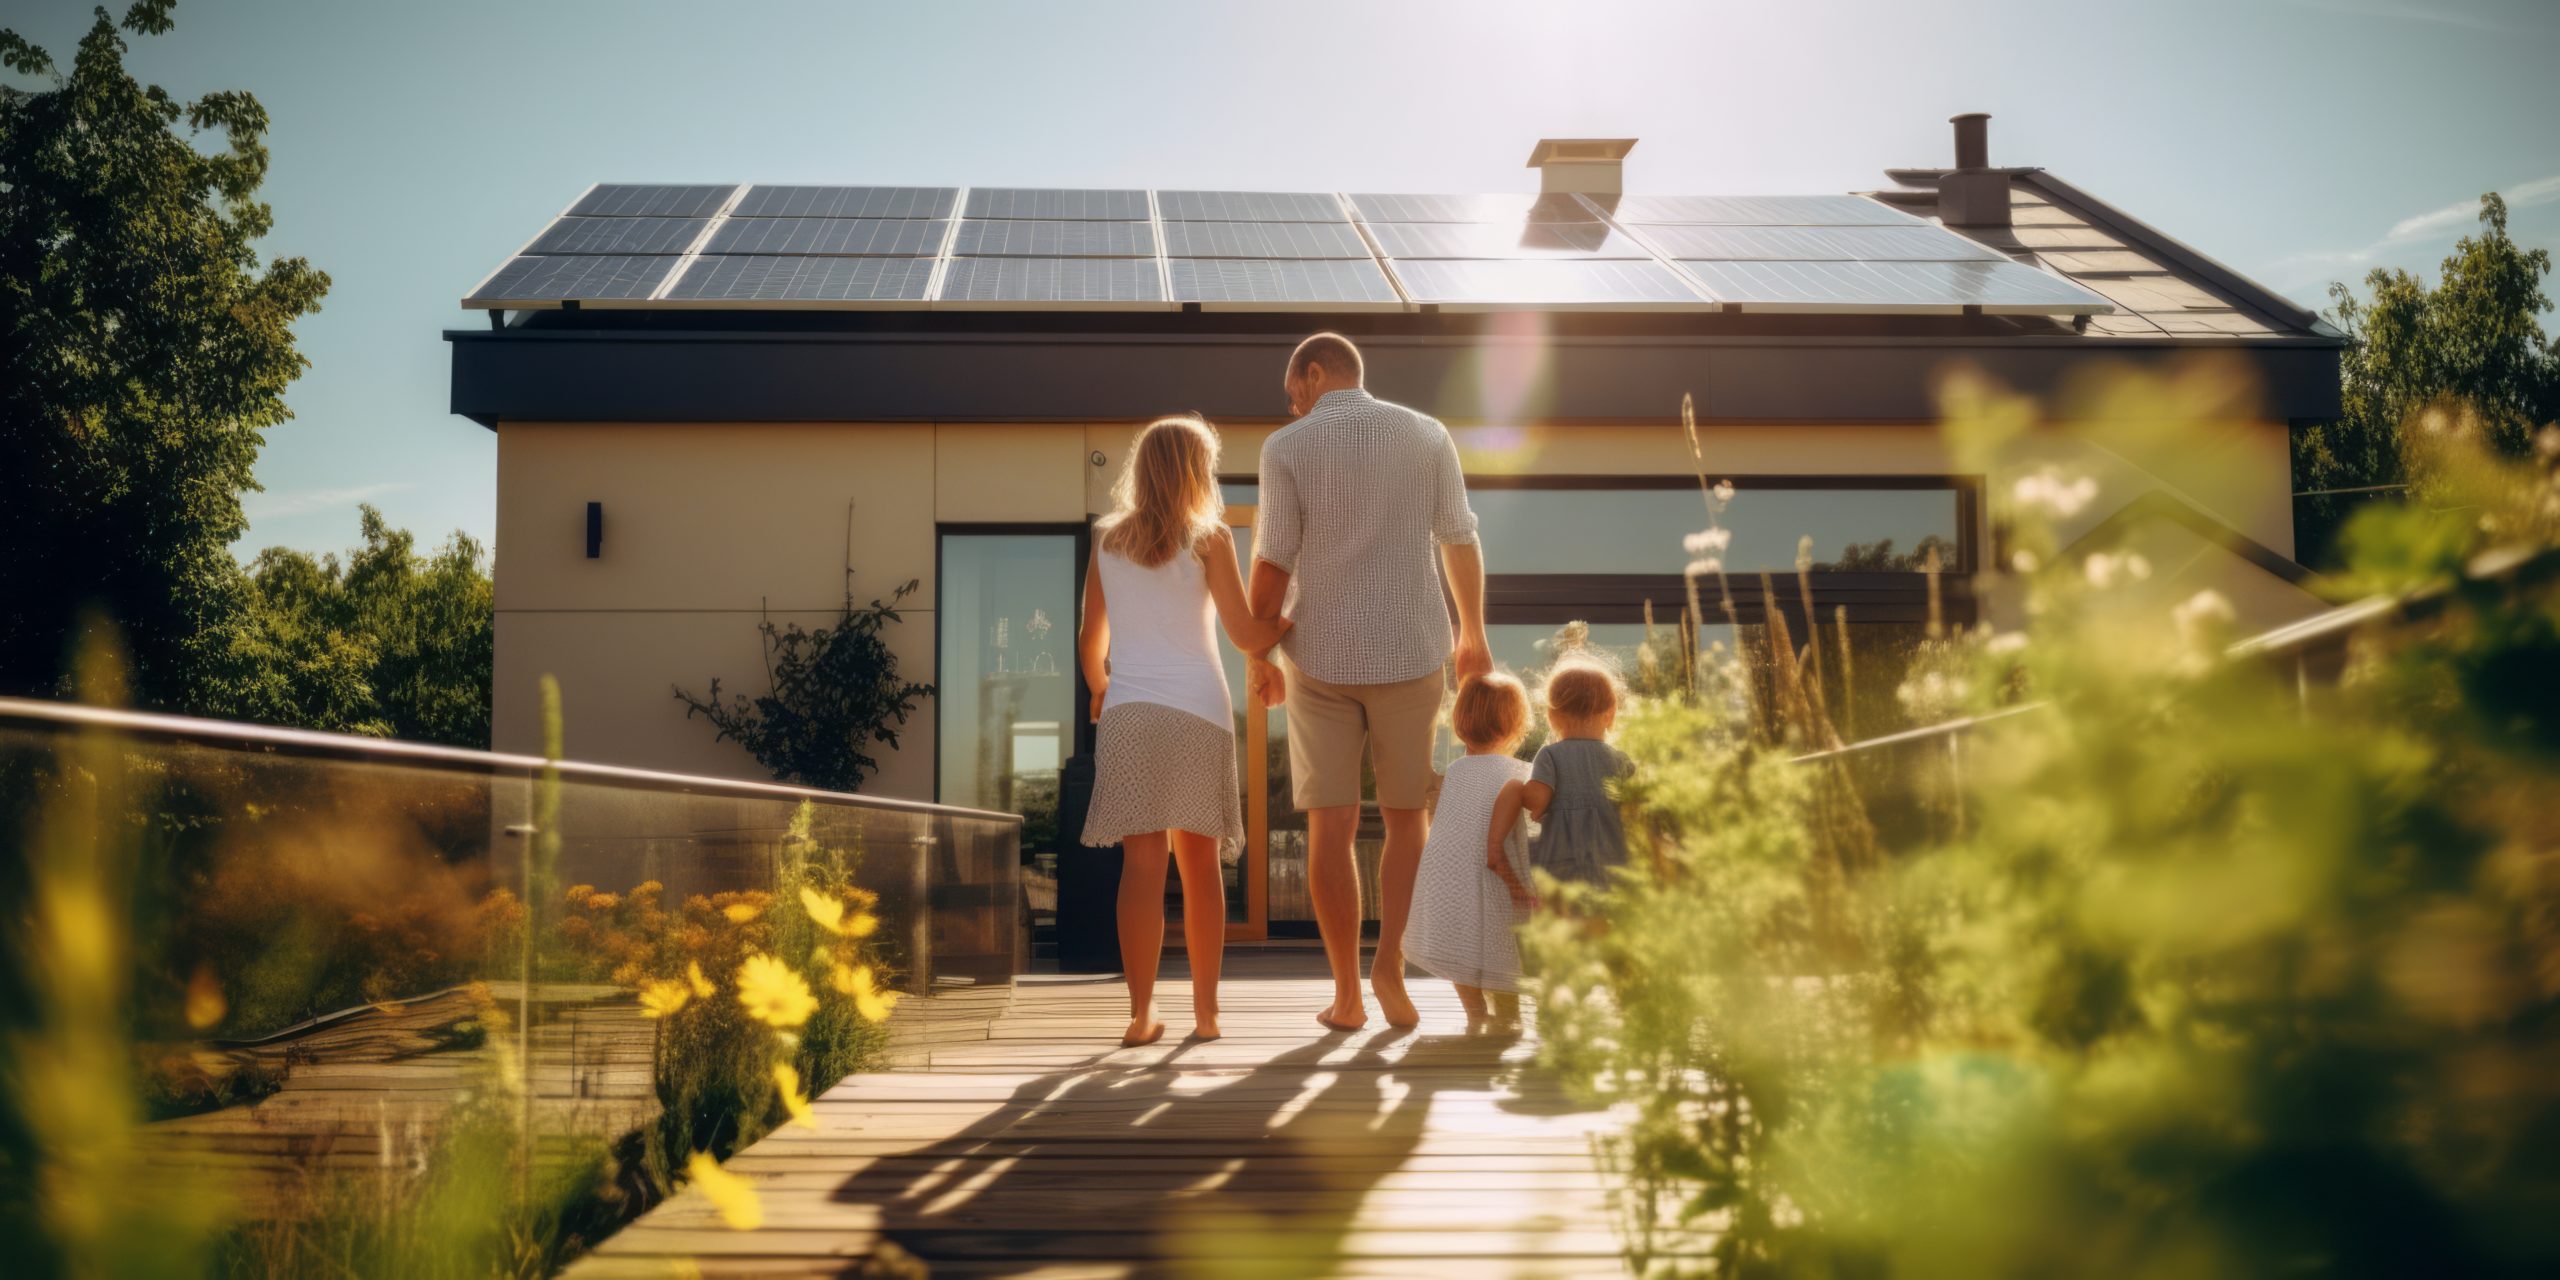 Prime à l’Autoconsommation : Comment bénéficier des avantages financiers pour votre installation photovoltaïque